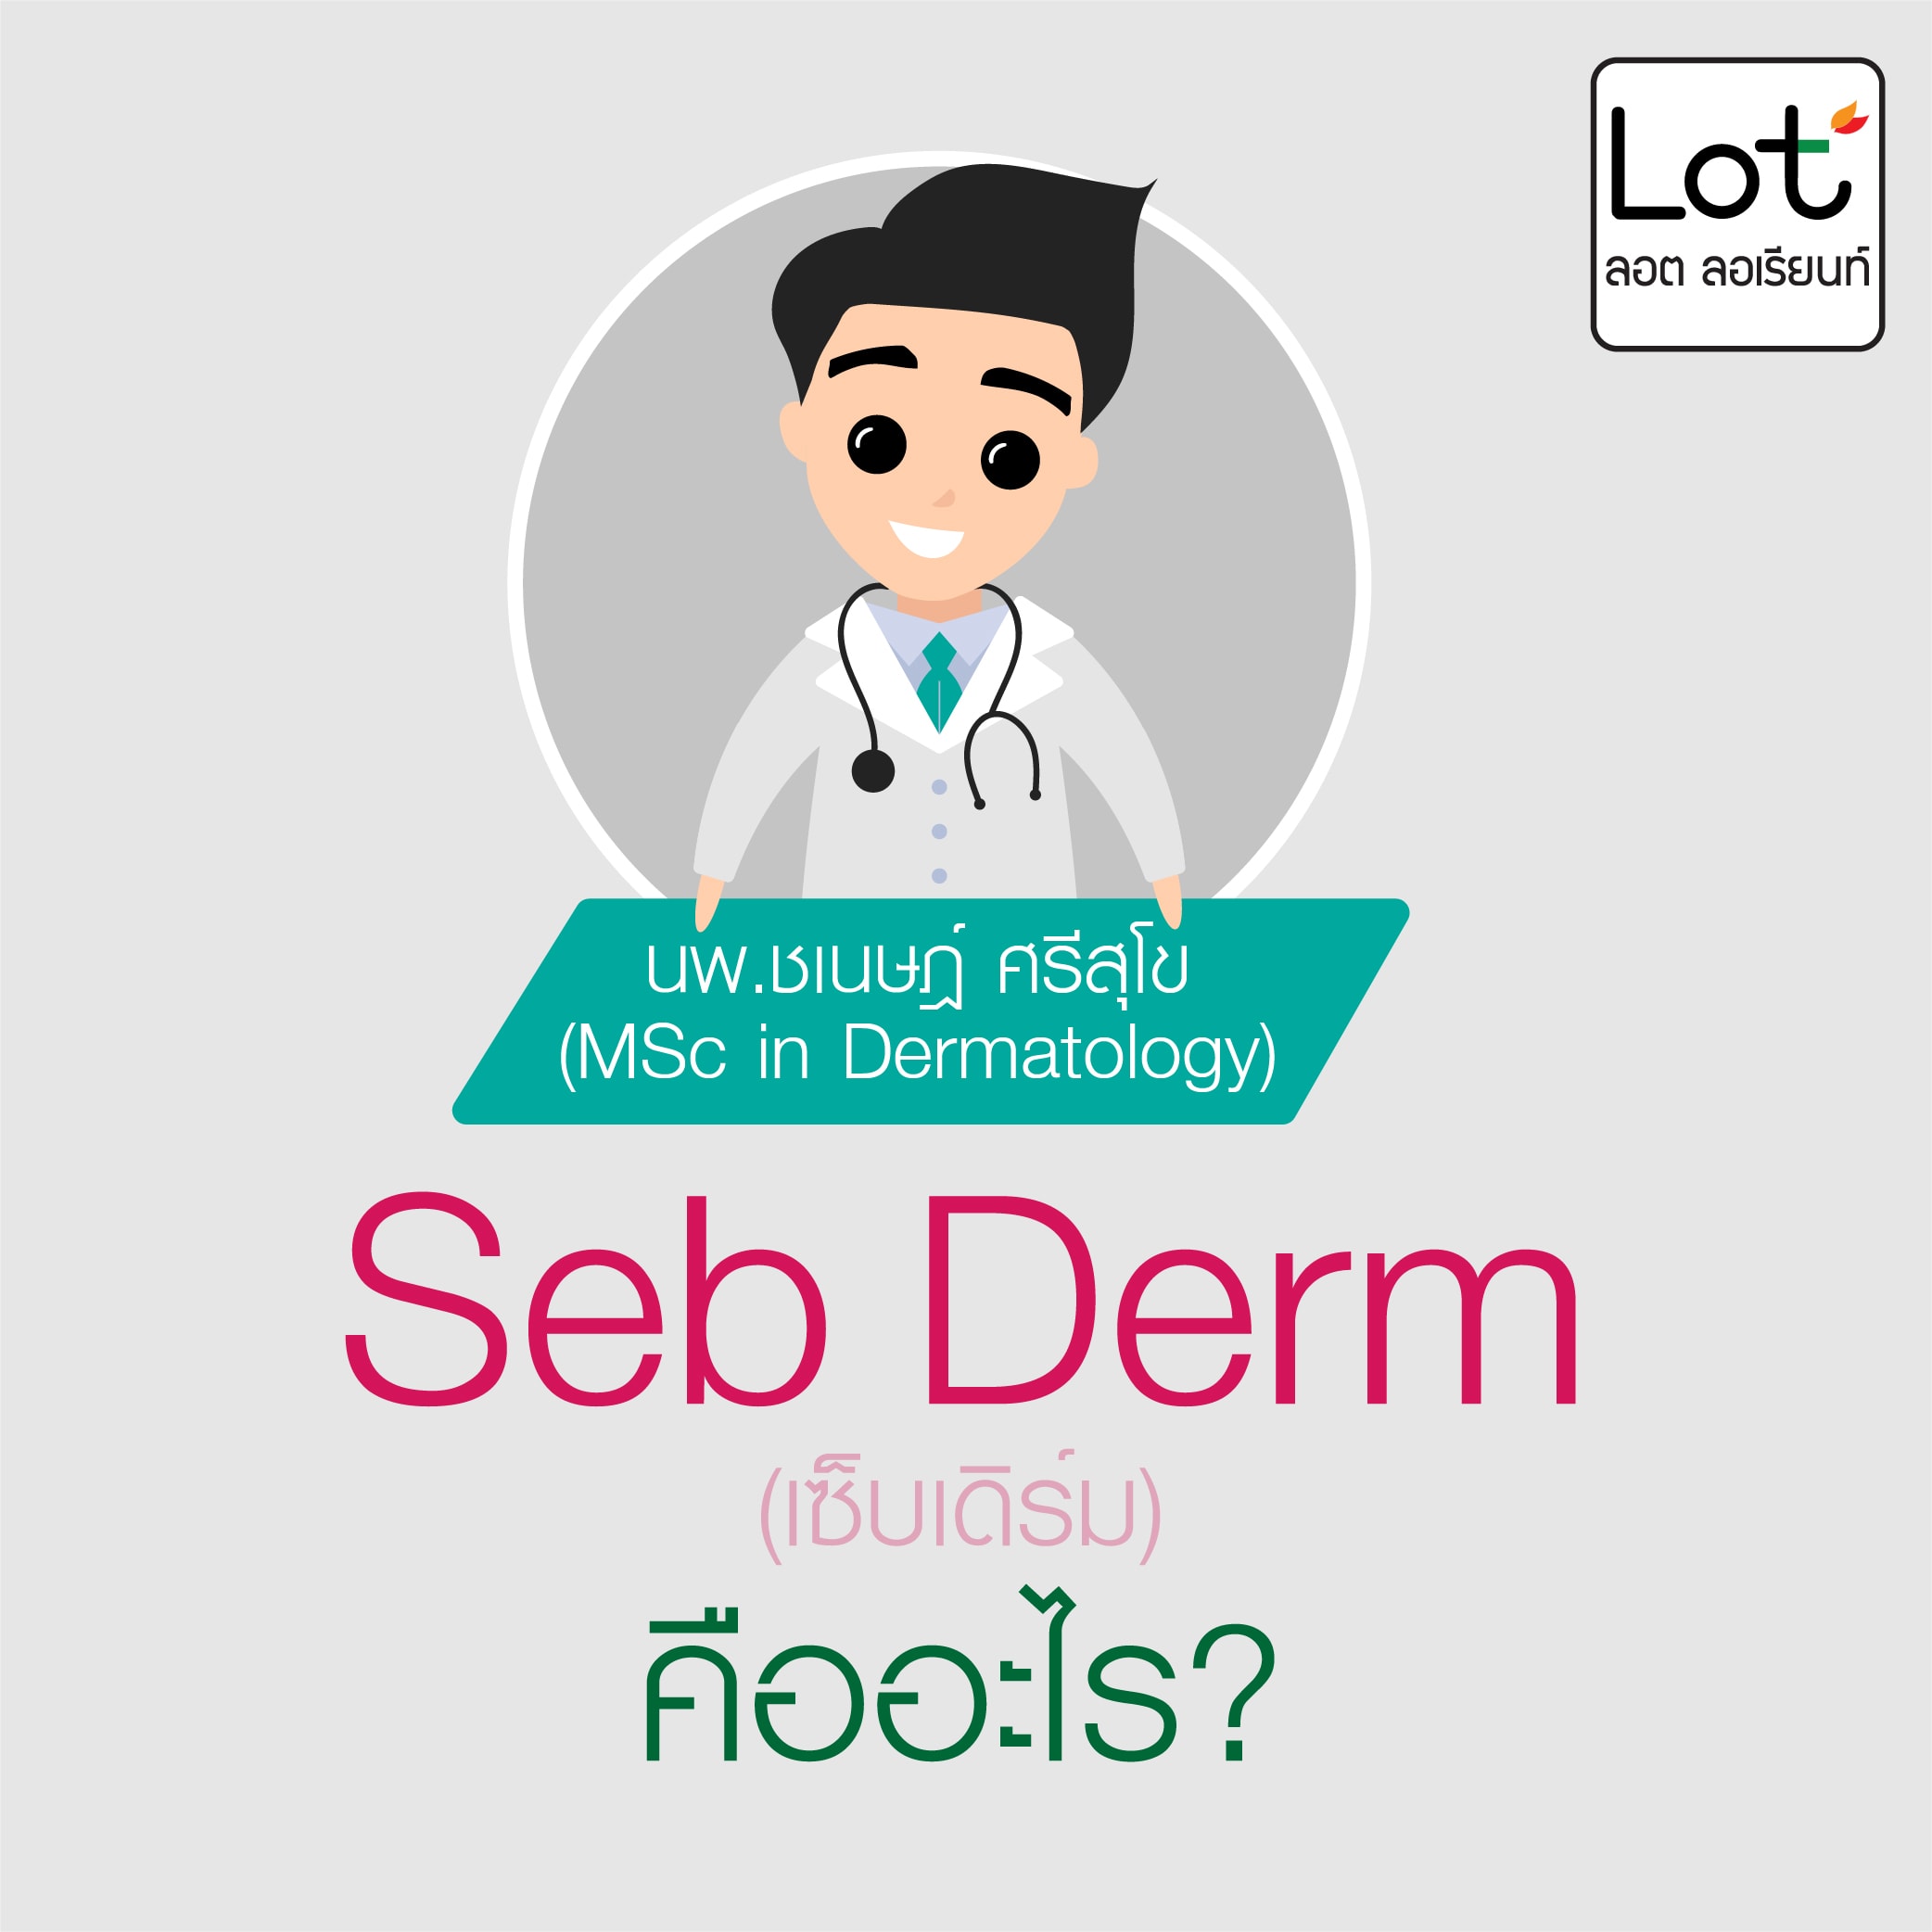 seborrheic dermatitis, เซ็บเดิร์ม, ลอต ลอเรียนท์